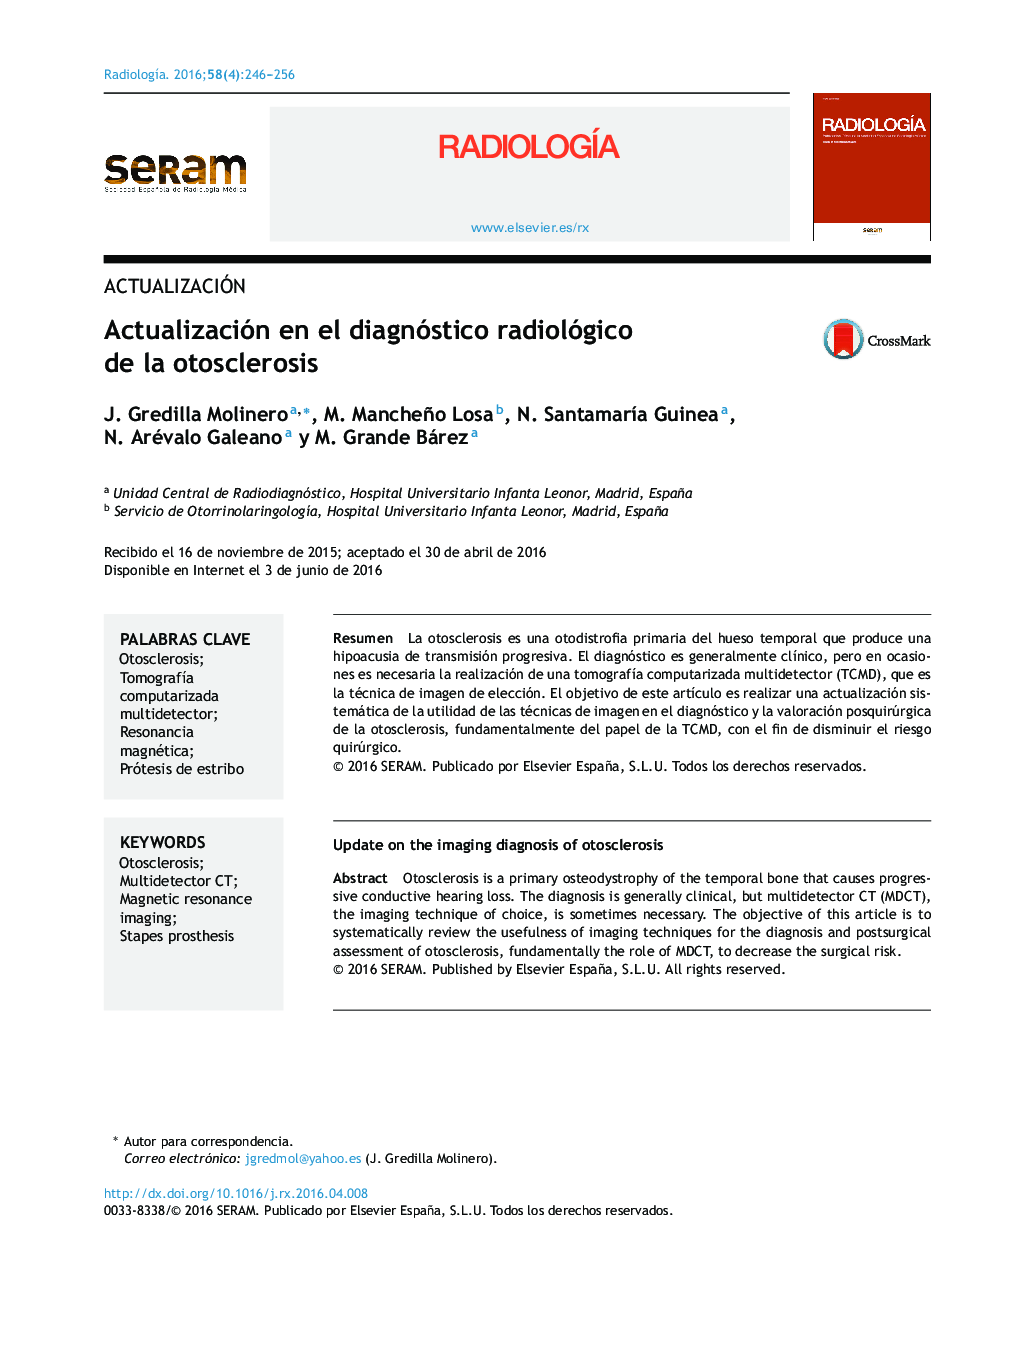 Actualización en el diagnóstico radiológico de la otosclerosis